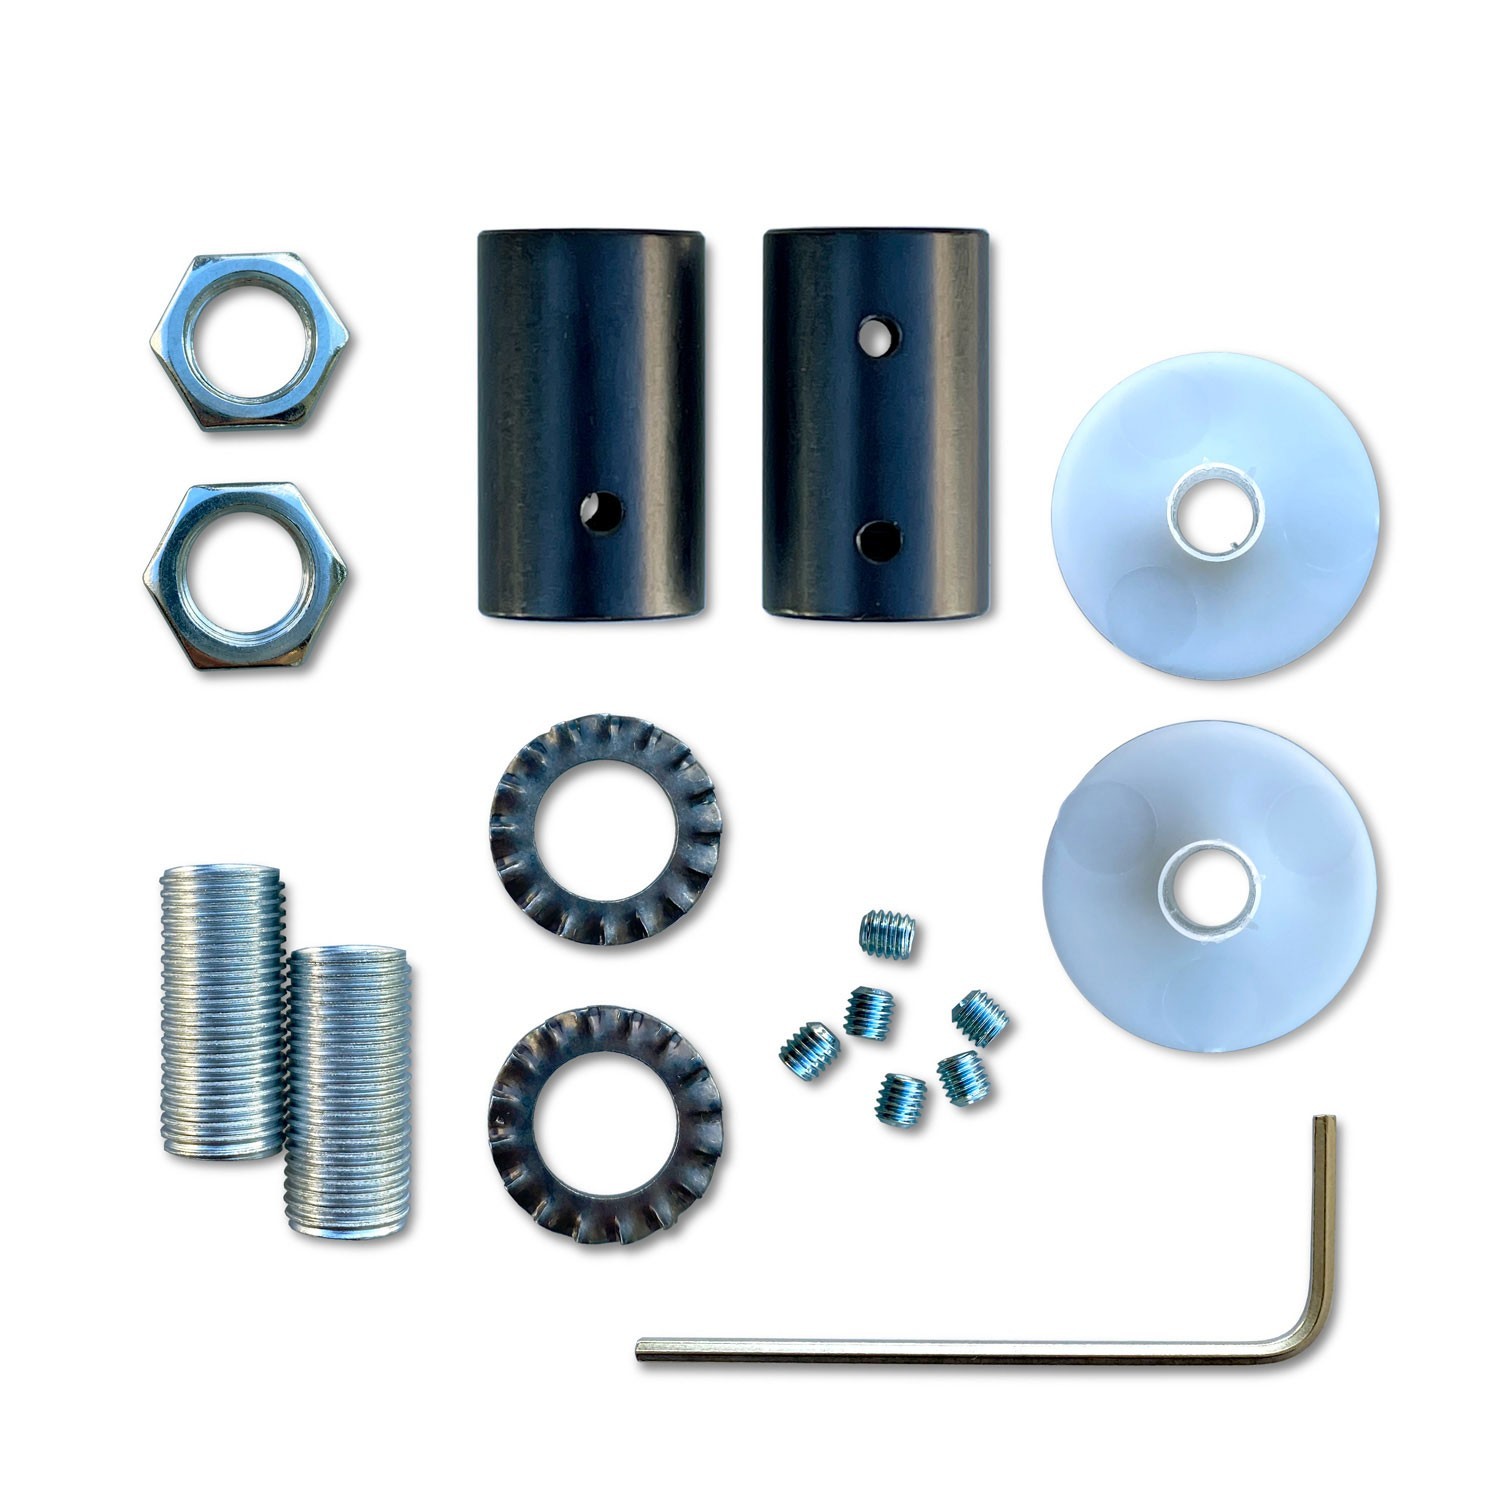 Kit Creative Flex tubo flessibile di estensione rivestito in tessuto RM20 Blu scuro con terminali metallici